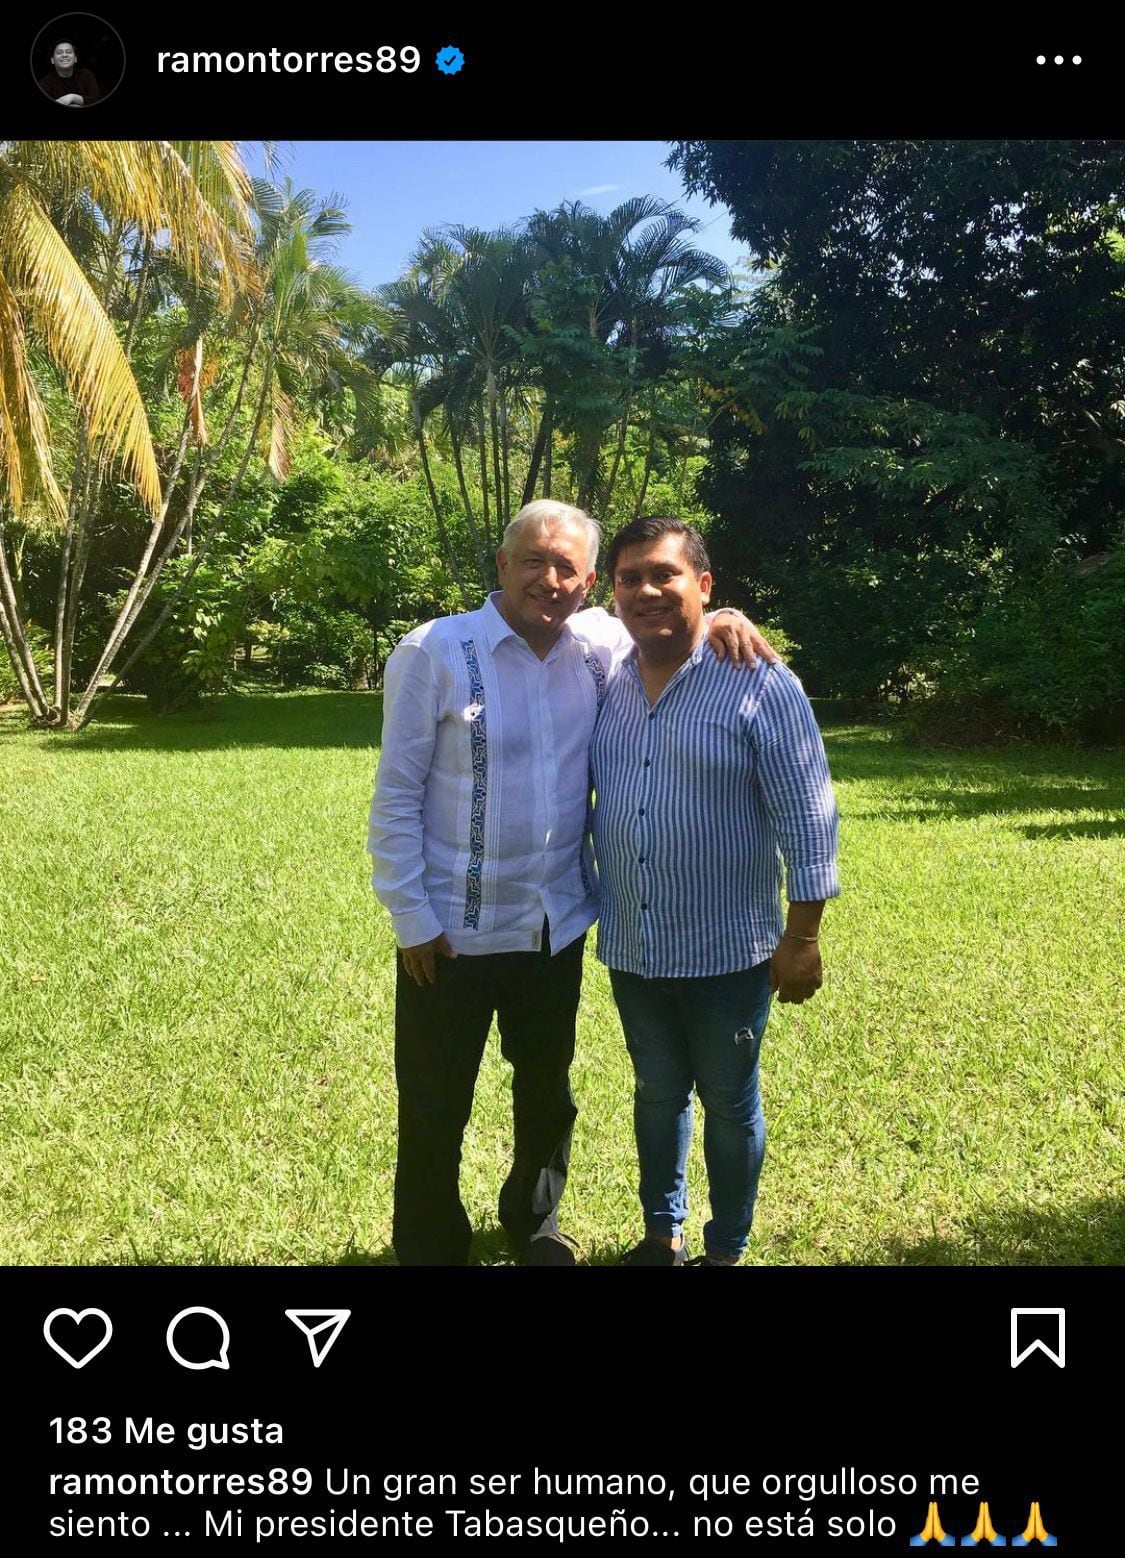 El chef fue contratado en la Secretaría Particular de la Presidencia de la República, según una investigación periodística (Instagram/@ramontorres89)